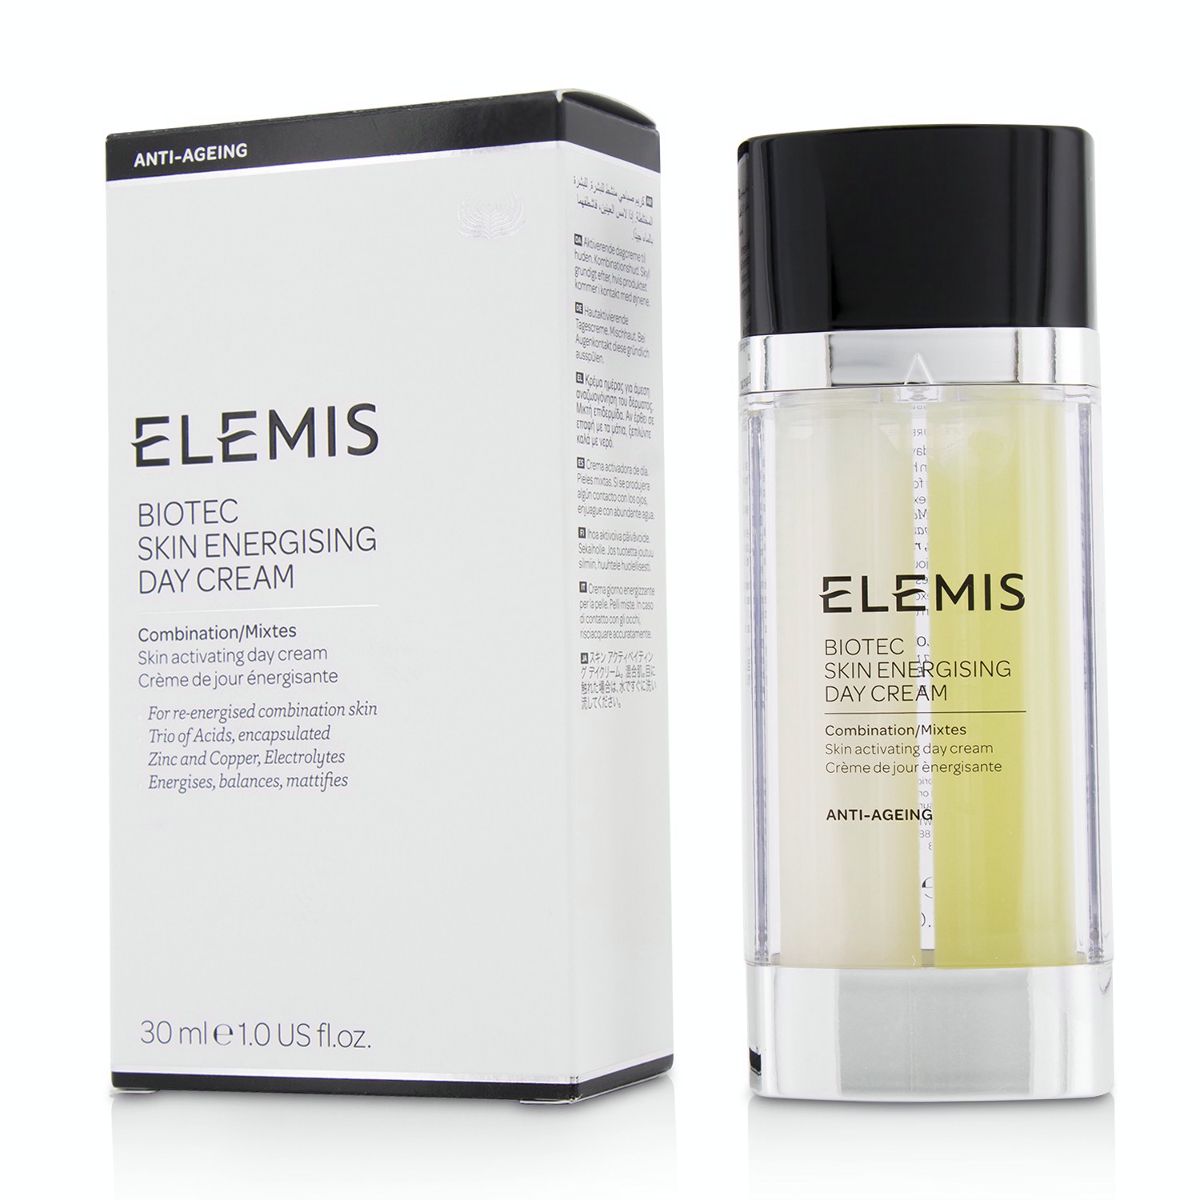 BIOTEC Skin Energising Day Cream - Combination Elemis Image